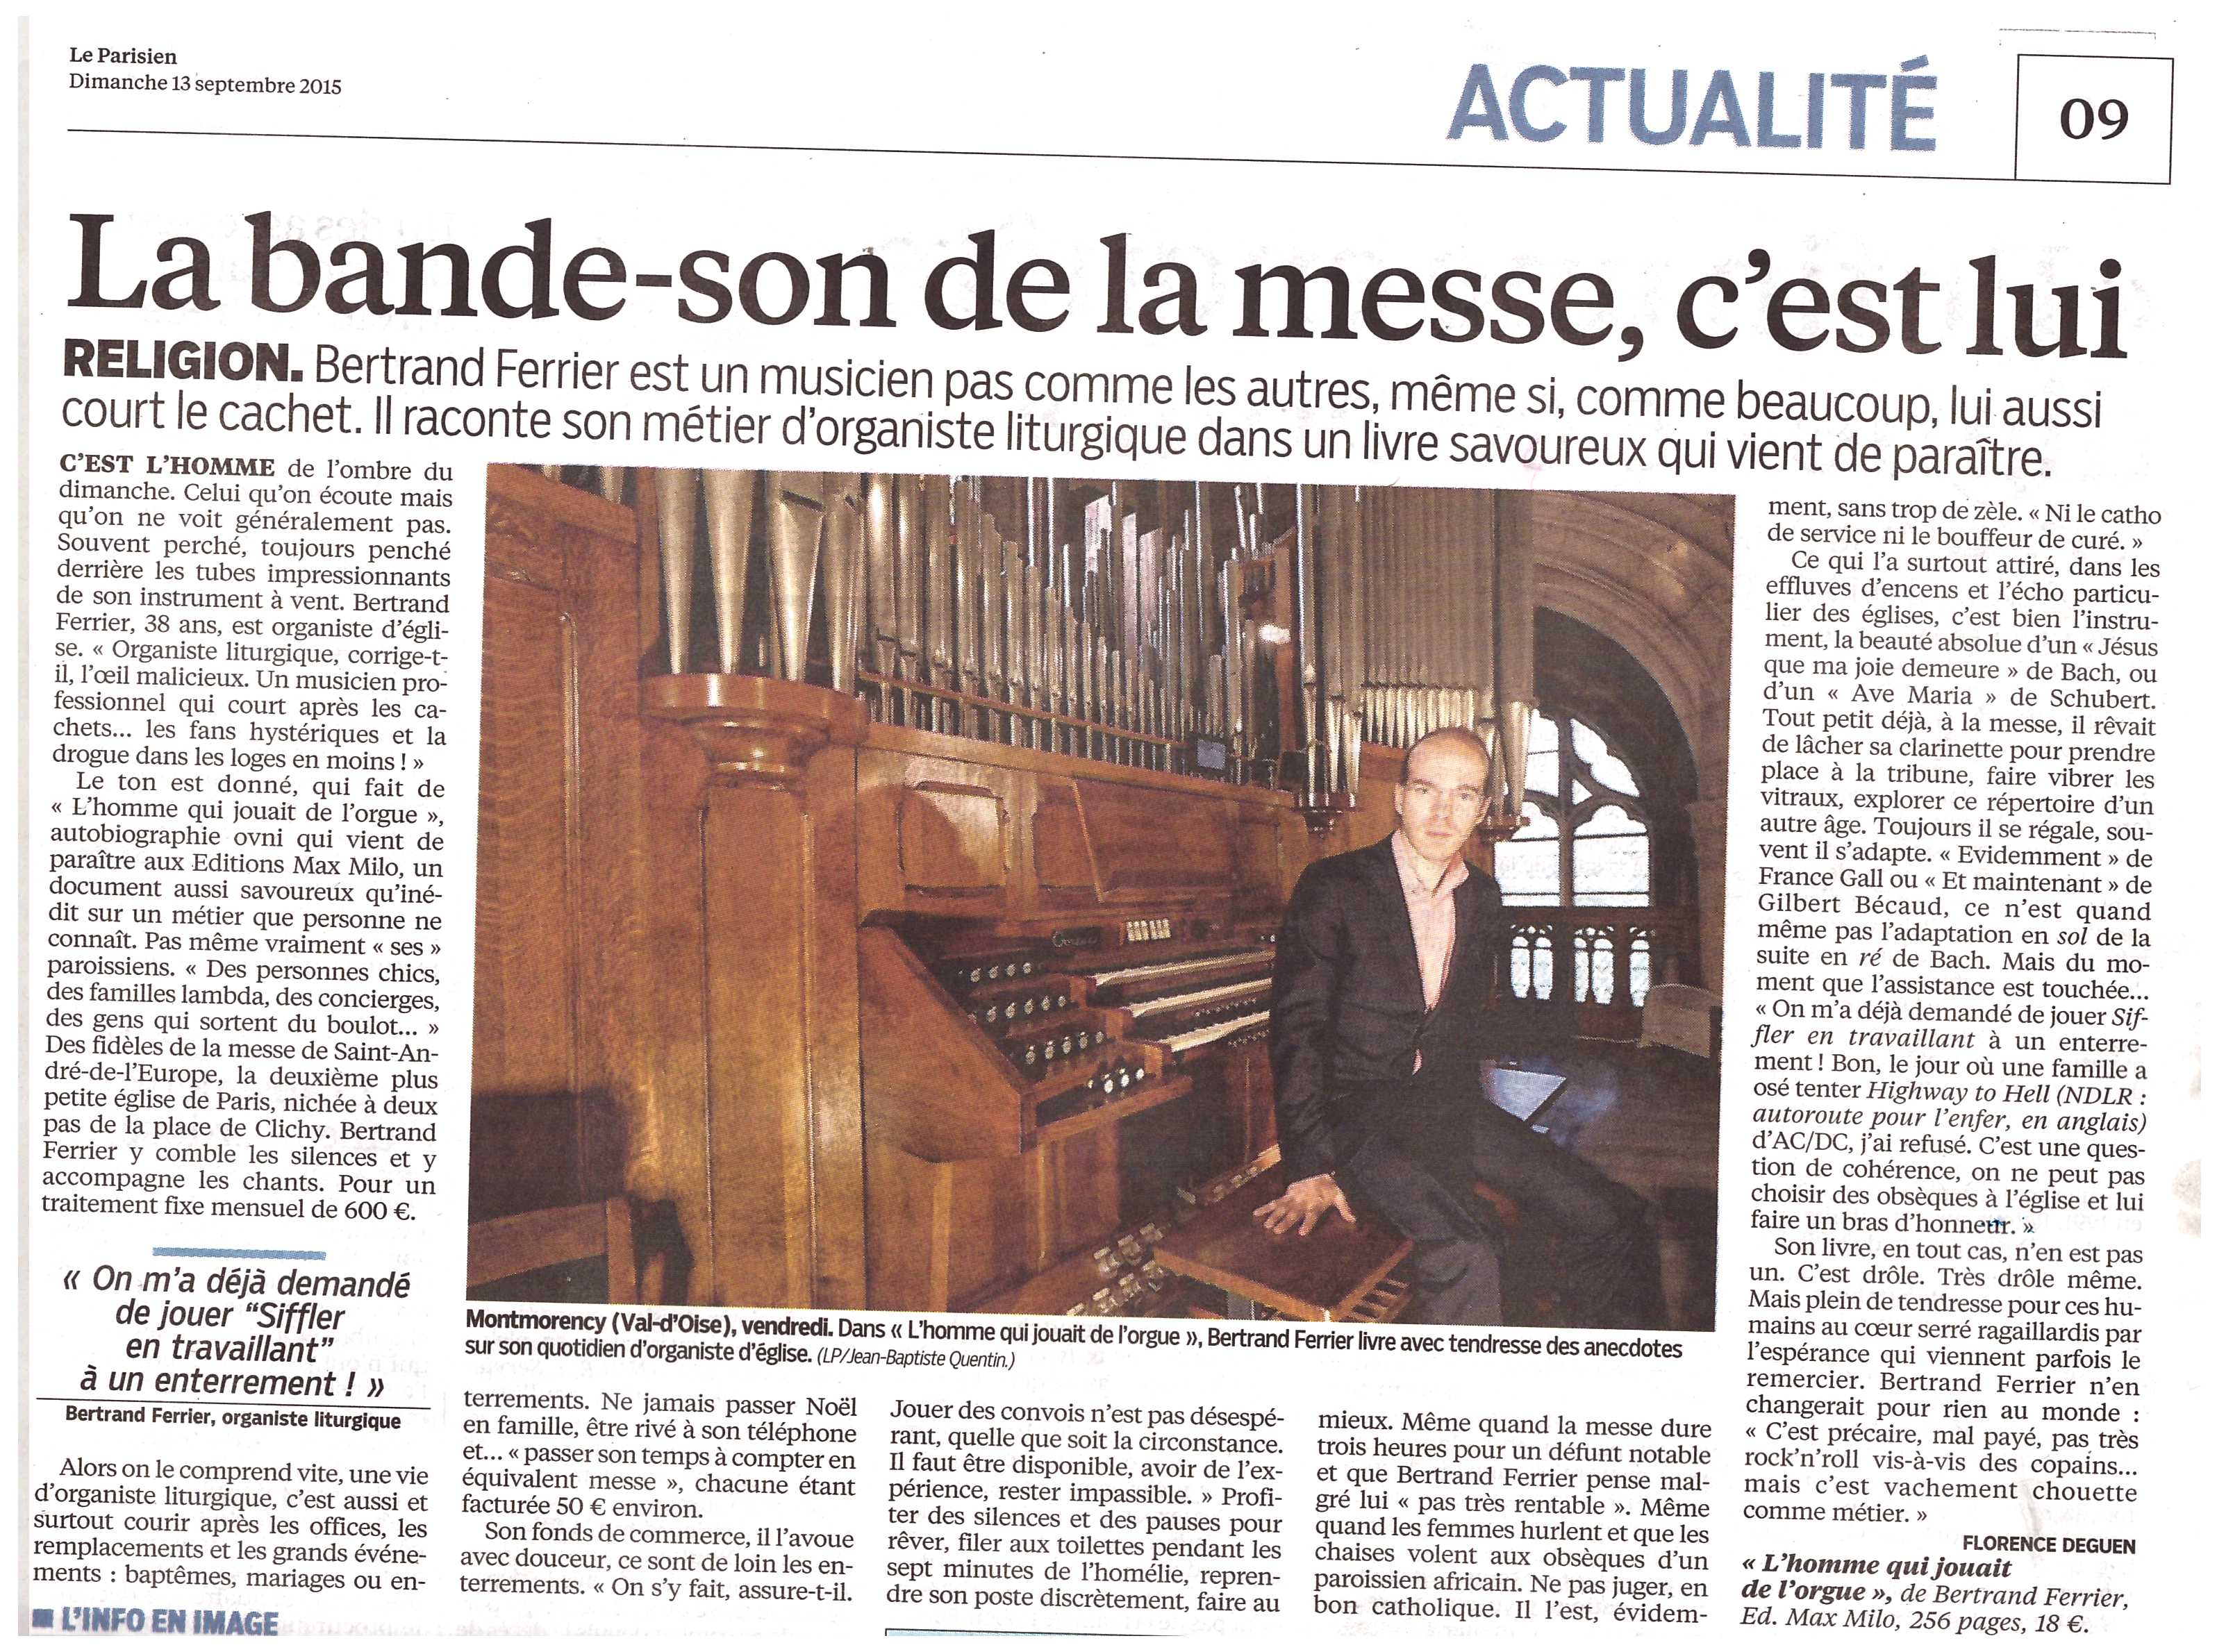 "L'Homme qui jouait de l'orgue" séduit "Le Parisien"